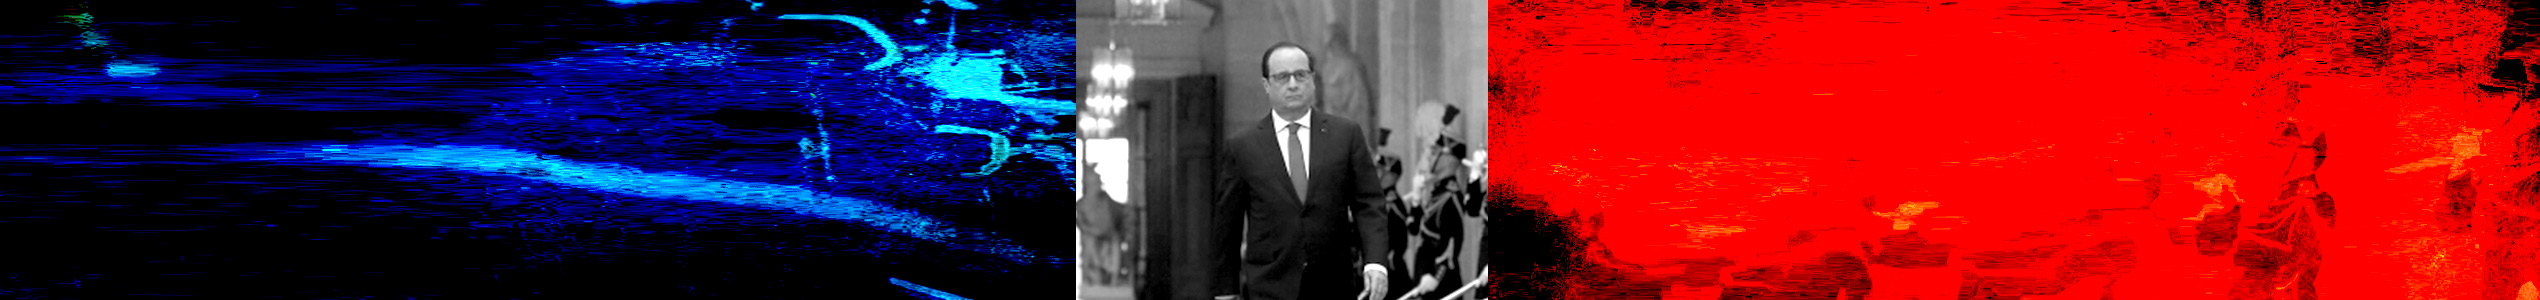 צילום: אתר נשיא צרפת